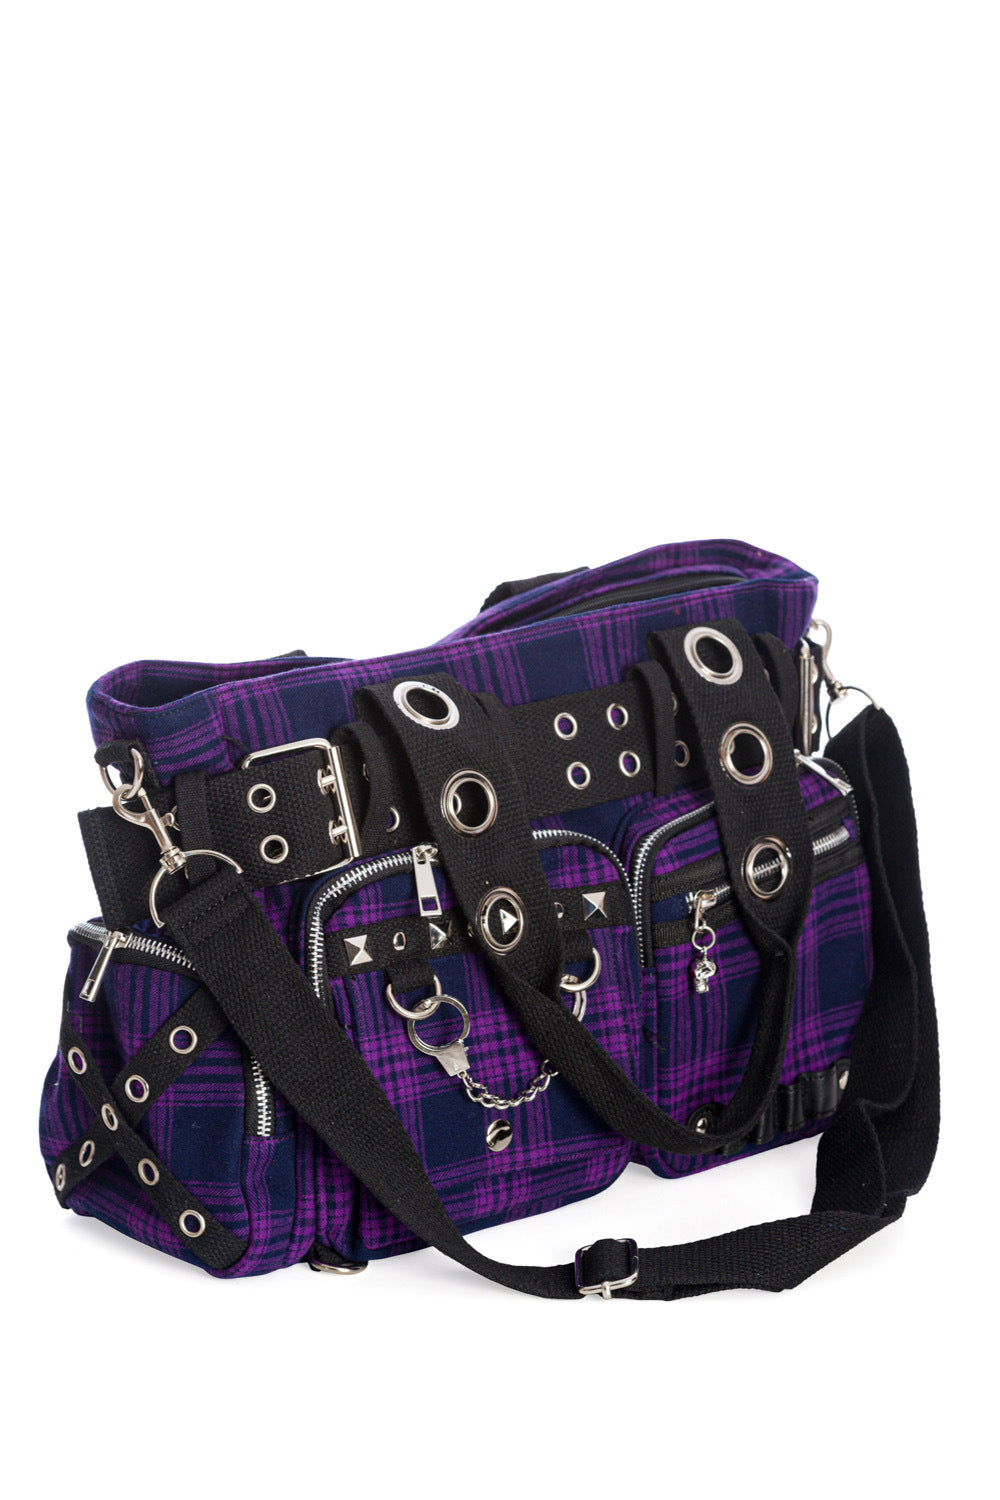 Lila-karierte Handtasche CAMDYN HANDBAG Purple mit Handschellendetail, mehreren kleinen Seitentaschen und vielen Zier-Ösen von Banned